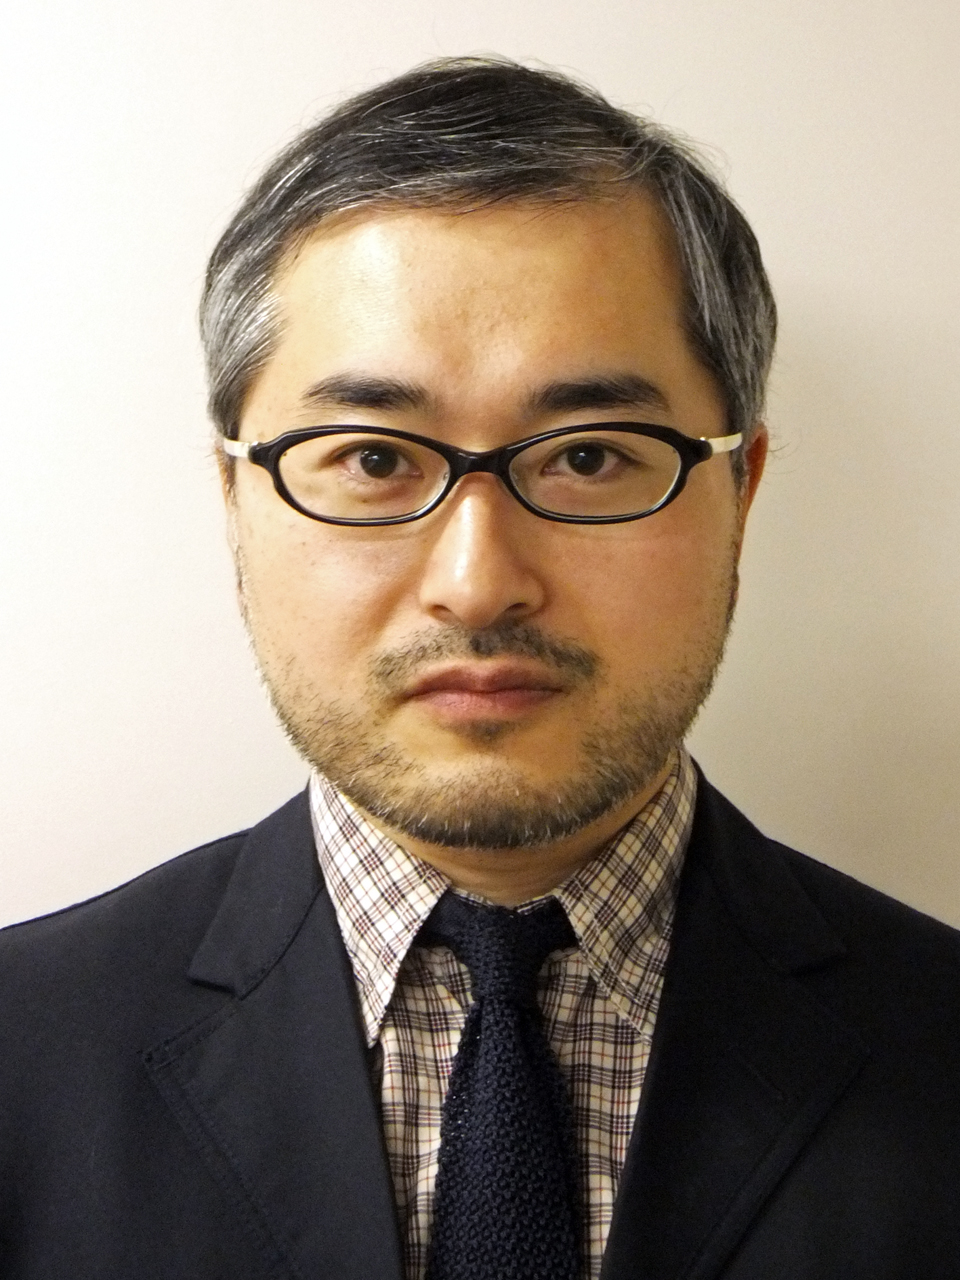 Koichiro Sugimura